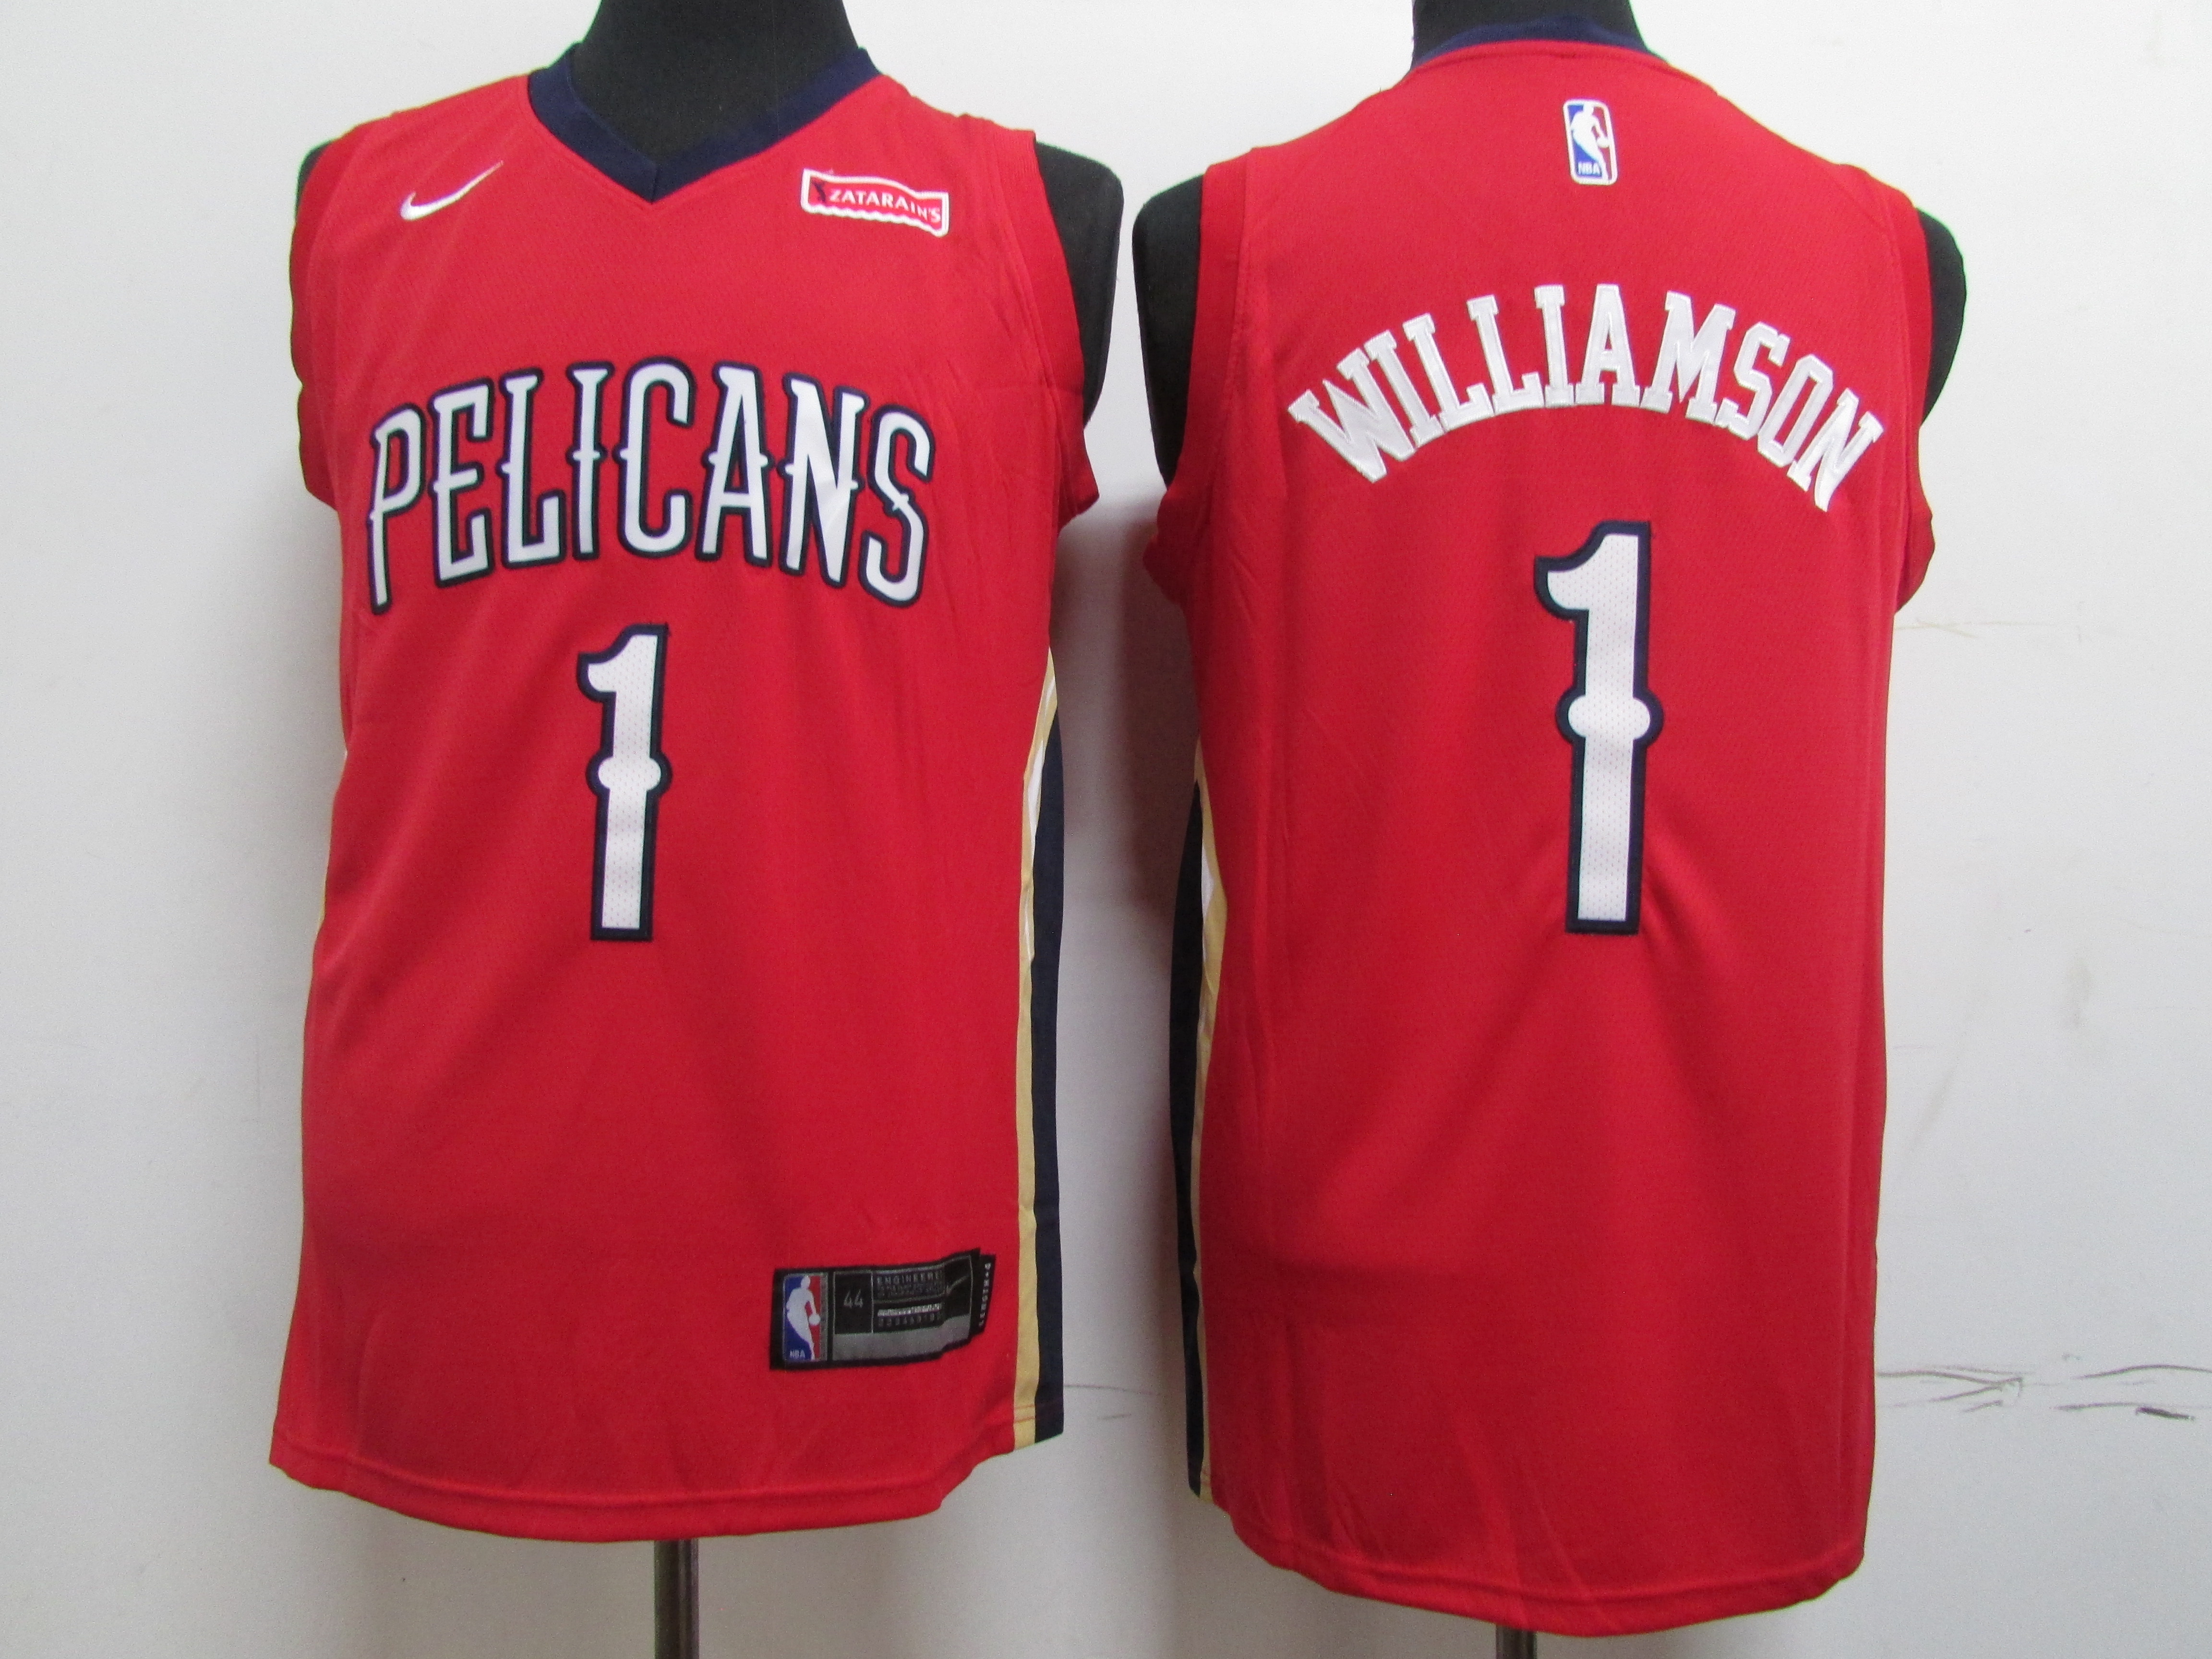 Pelicans 1 Zion Williamson Red Nike Swingman Jersey